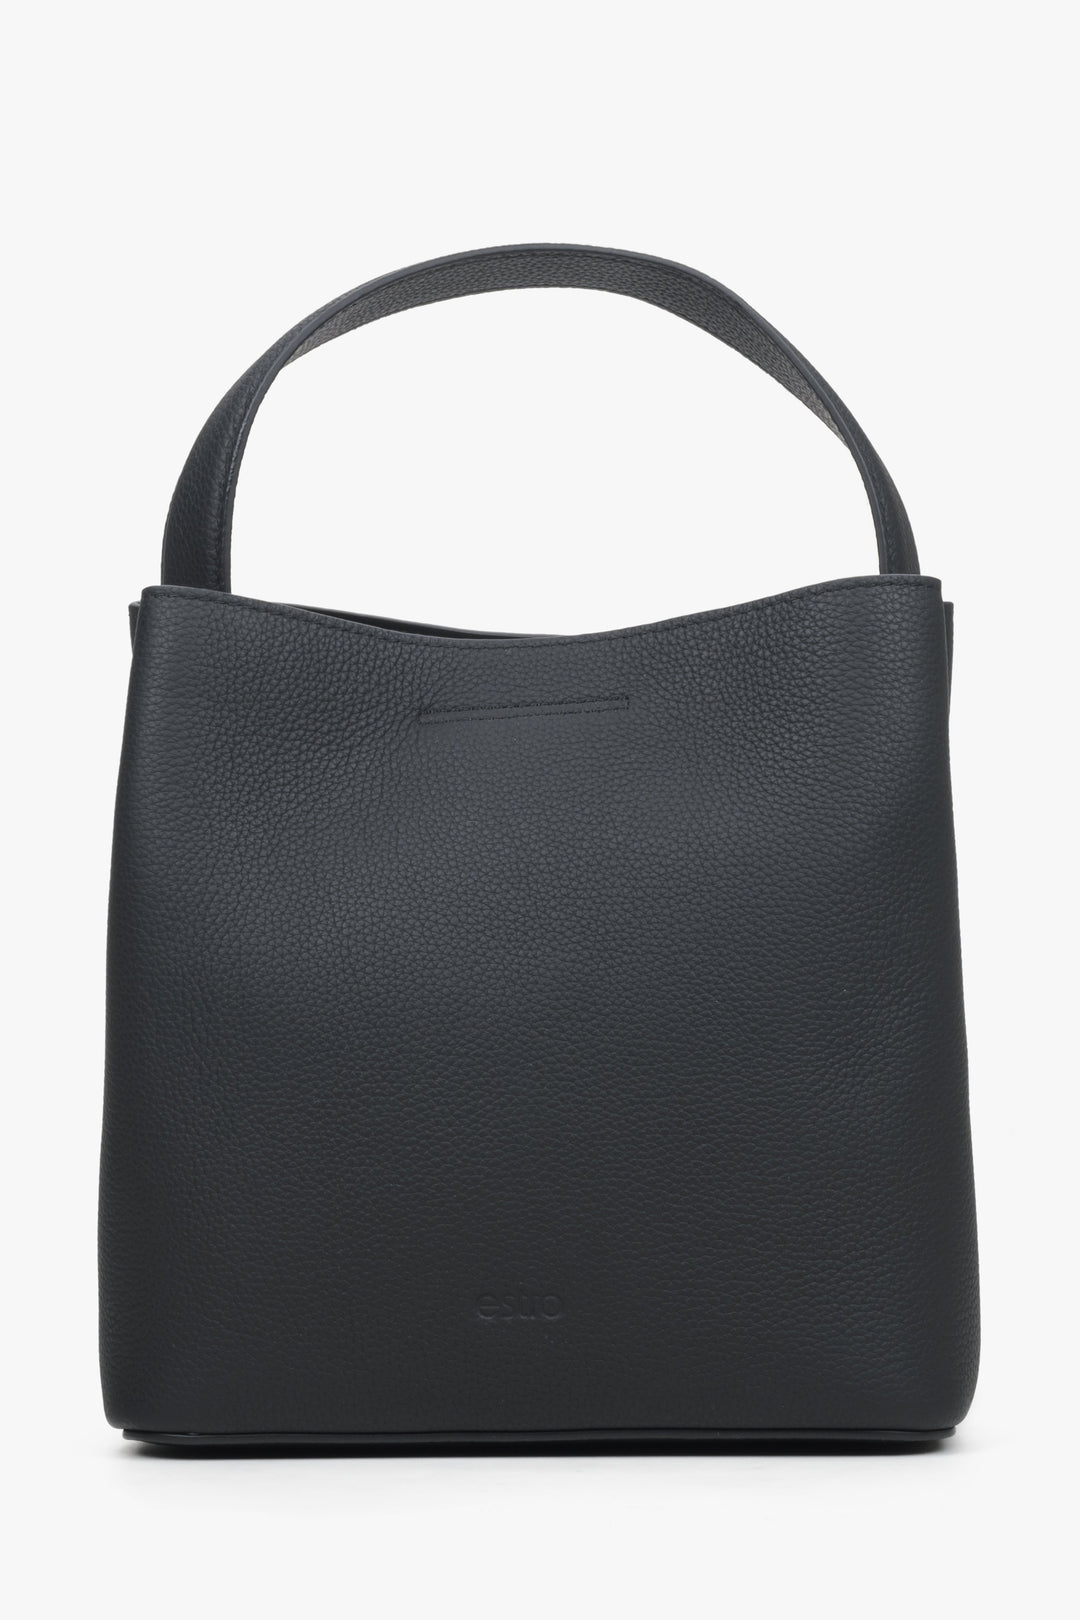 Spacious Estro women's handbag made of genuine black leather.